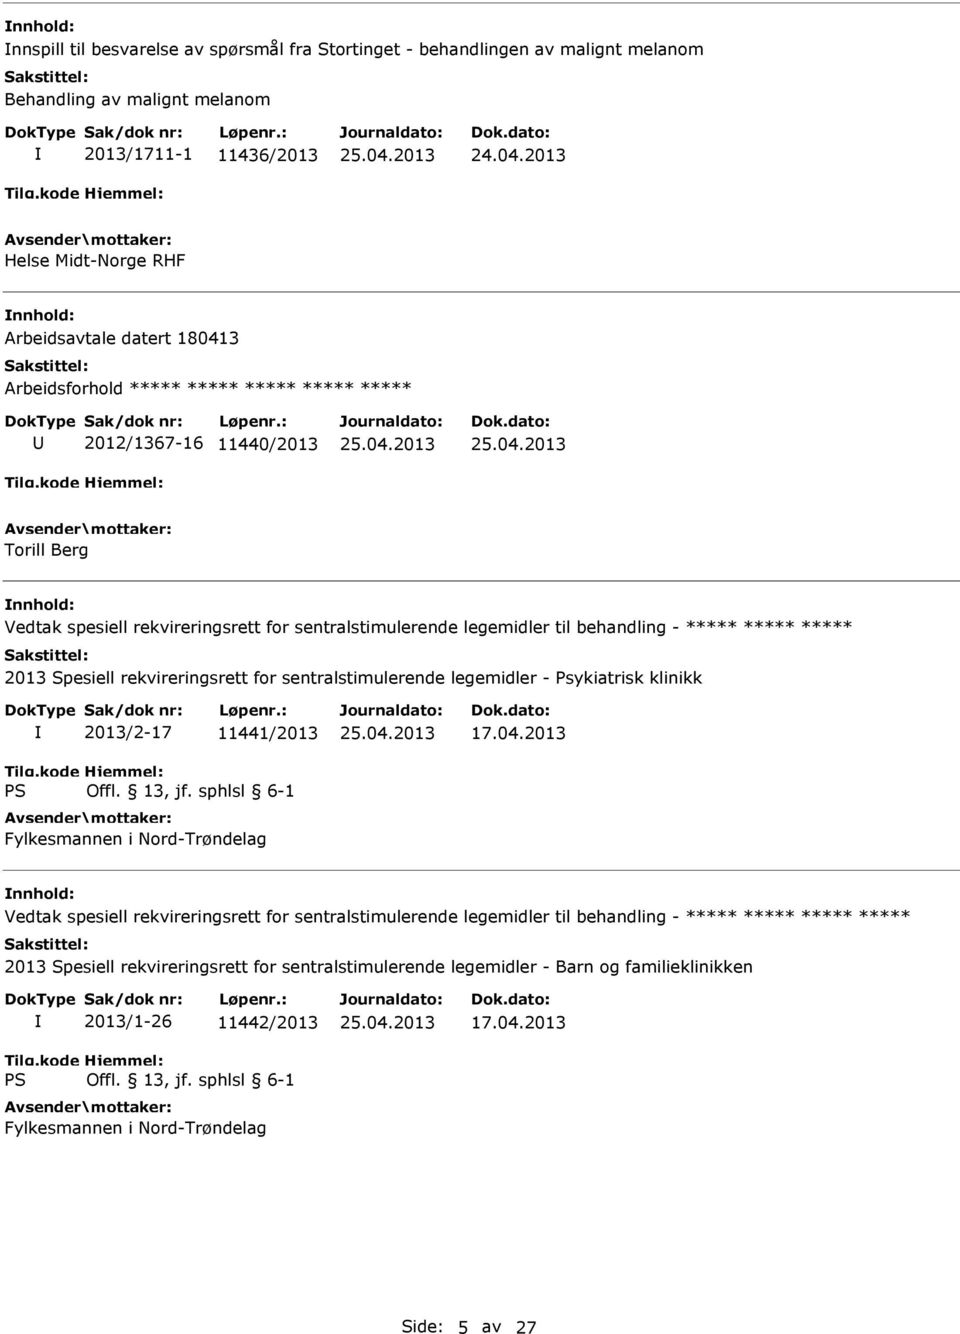 ***** 2013 Spesiell rekvireringsrett for sentralstimulerende legemidler - Psykiatrisk klinikk 2013/2-17 11441/2013 Fylkesmannen i Nord-Trøndelag 17.04.